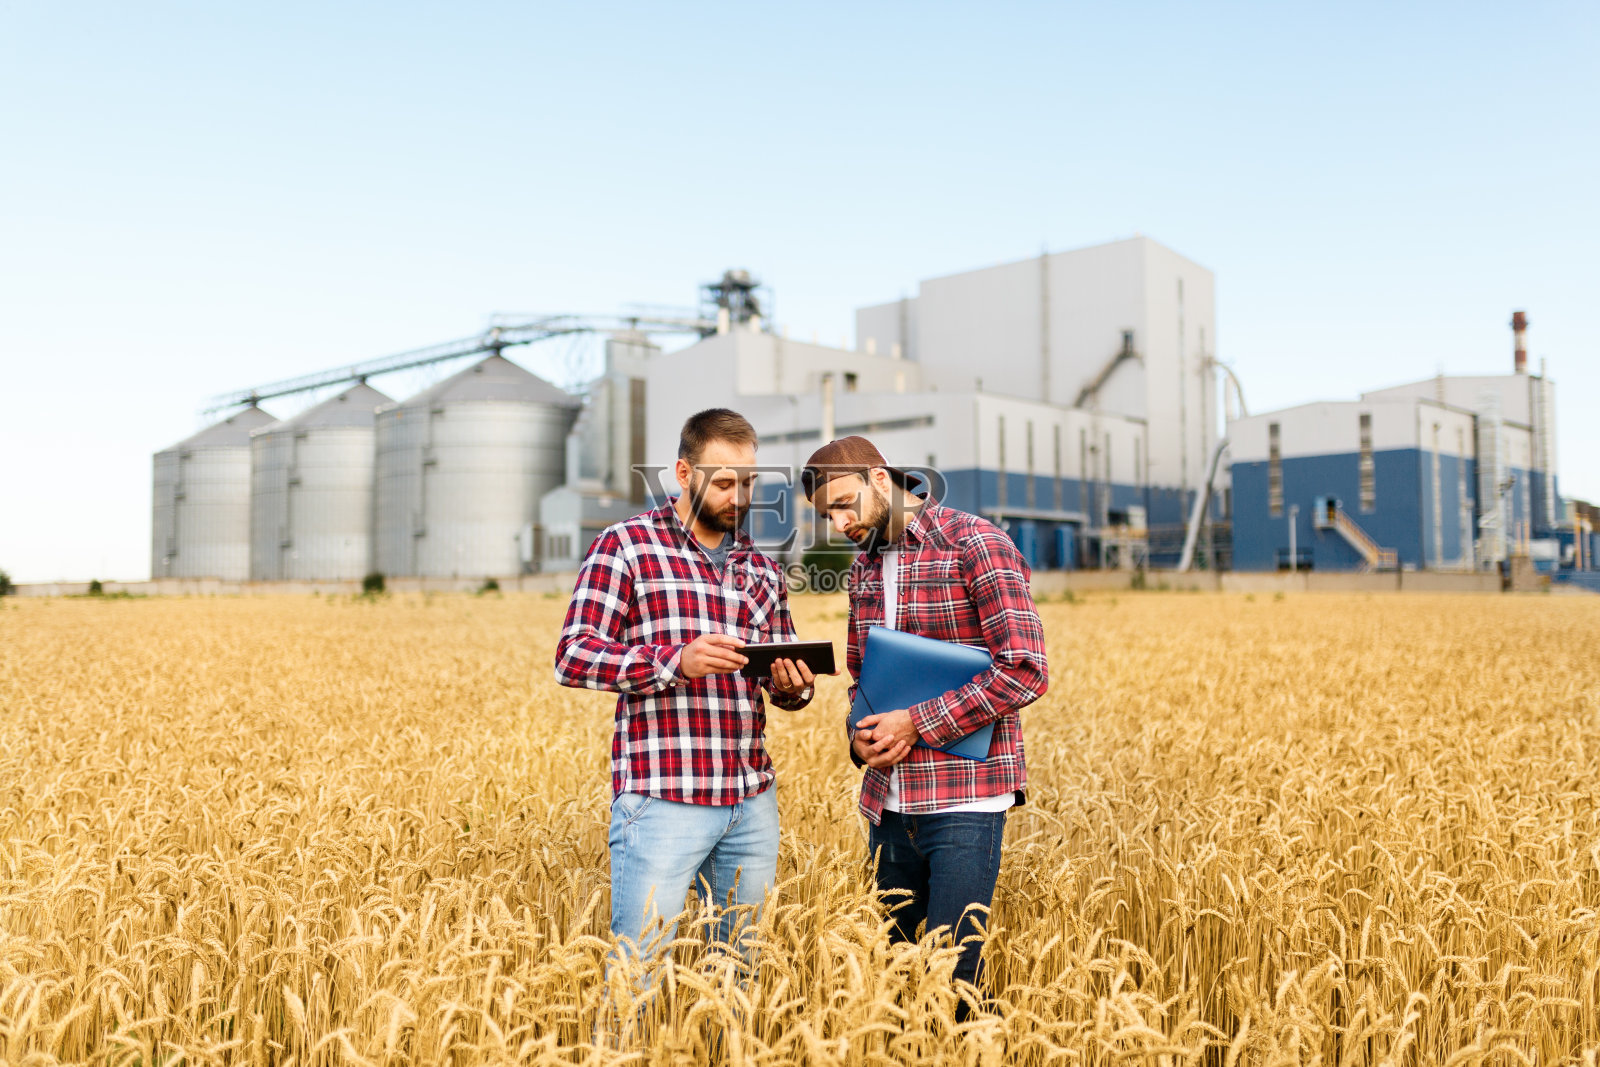 两个农民拿着石板站在麦田里。农学家以谷物终端电梯为背景，探讨小麦穗间的收获与作物照片摄影图片